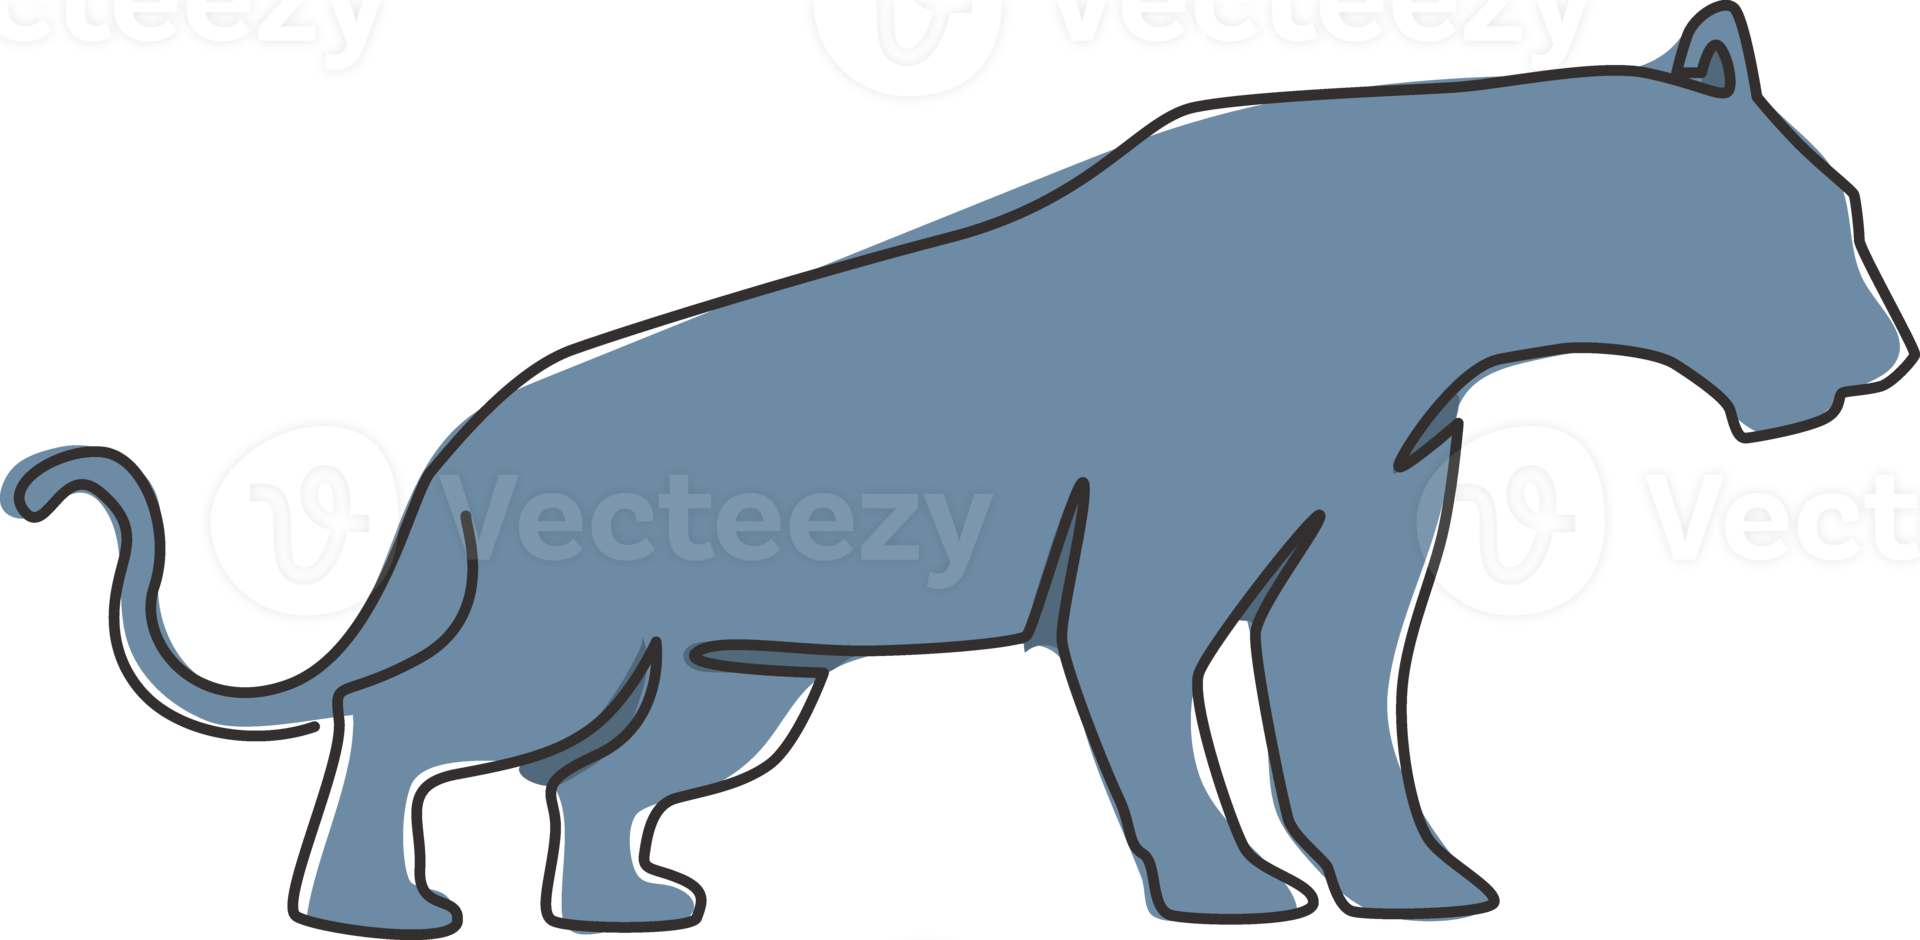 einzelne durchgehende Strichzeichnung eines eleganten Leoparden für die Logoidentität des Jägerteams. gefährliches Jaguar-Säugetier-Maskottchen-Konzept für den Sportclub. moderne eine linie zeichnen vektor design grafische illustration png